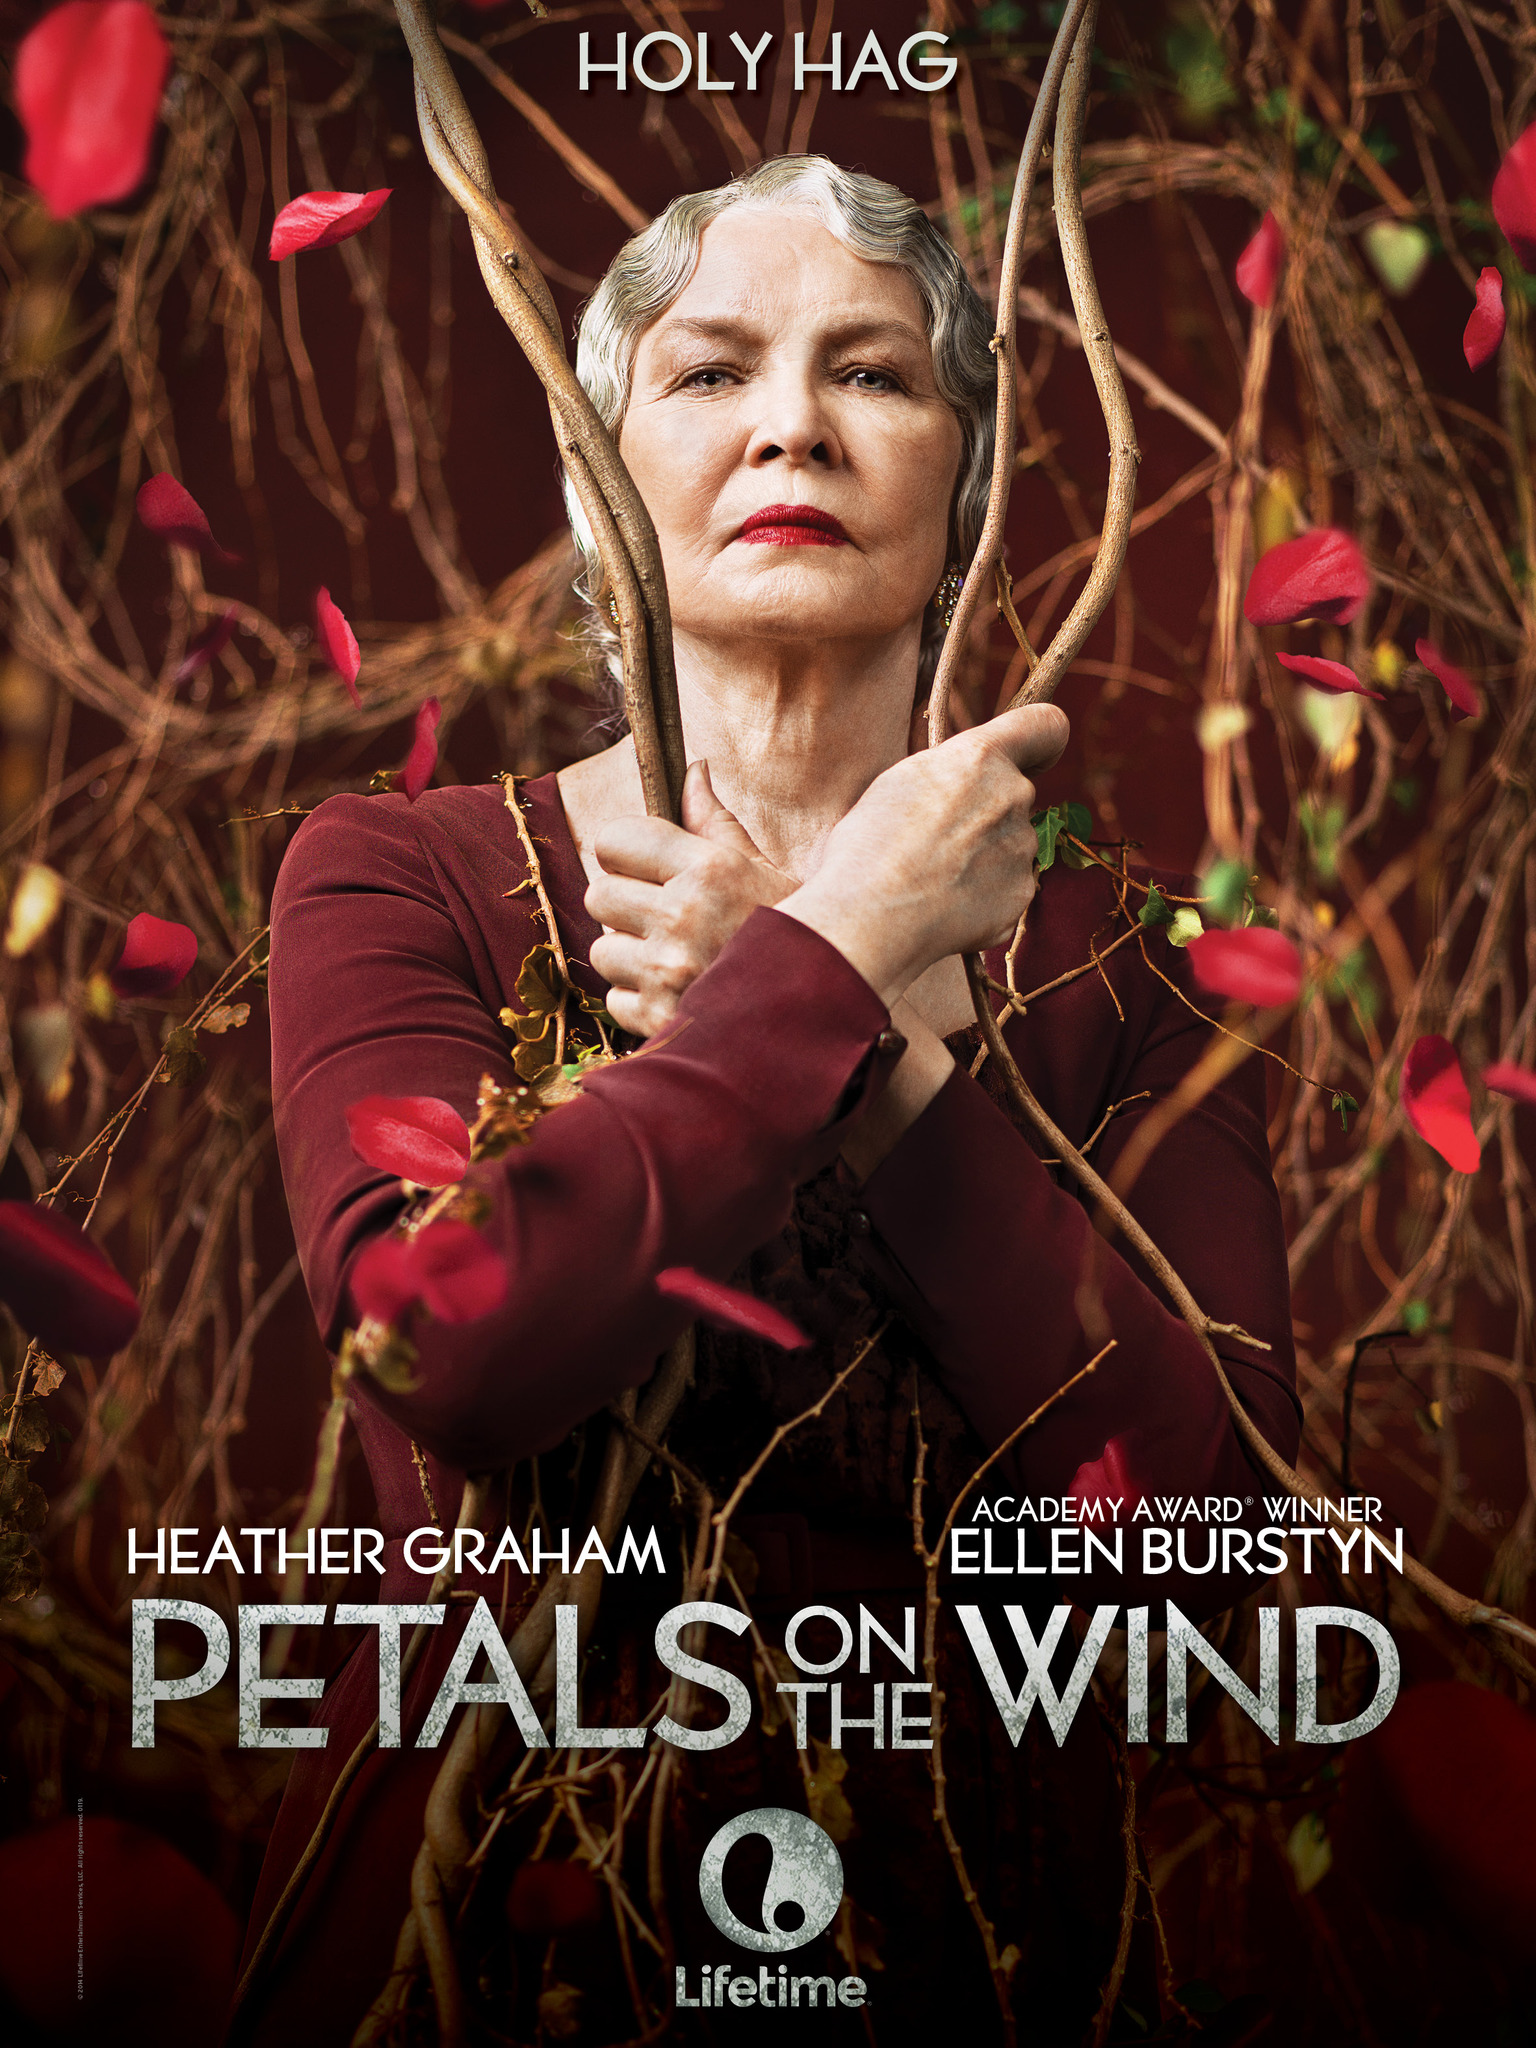 ดูหนังออนไลน์ฟรี Petals on the Wind (2014) เพทัล ออน เดอะ วินด์ หนังเต็มเรื่อง หนังมาสเตอร์ ดูหนังHD ดูหนังออนไลน์ ดูหนังใหม่